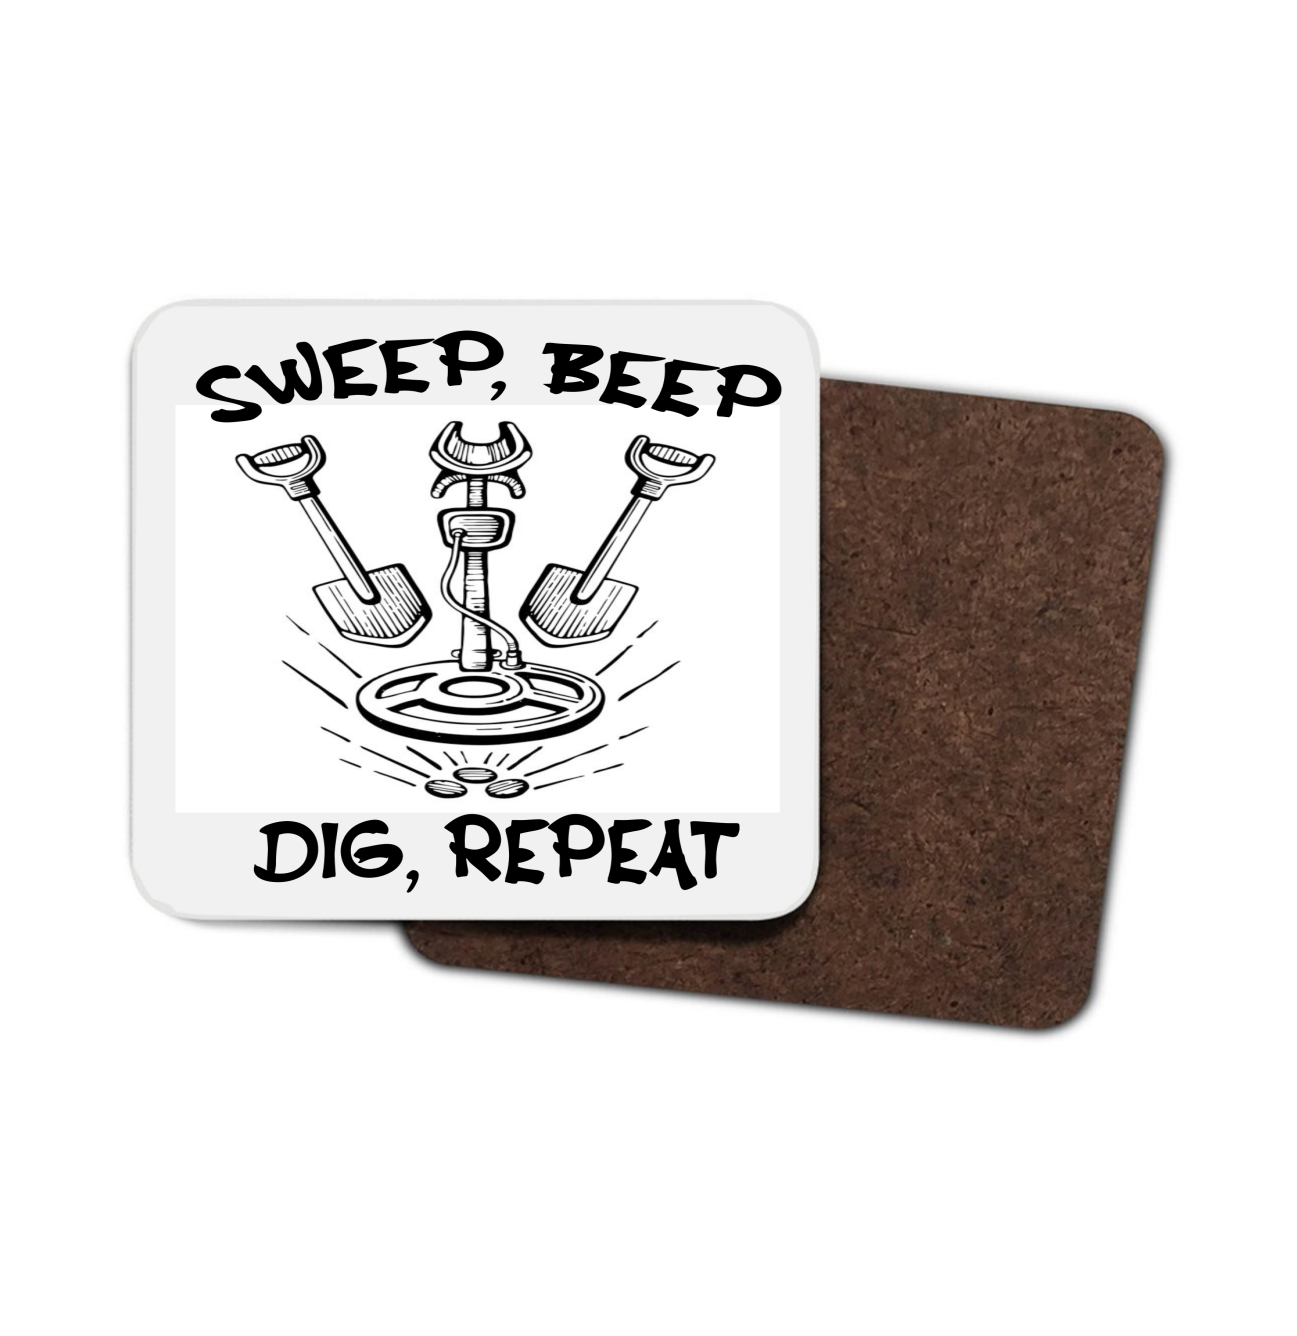 Sweep Beep Dig Repeat Hardboard Coaster, Funny Coaster, Detector